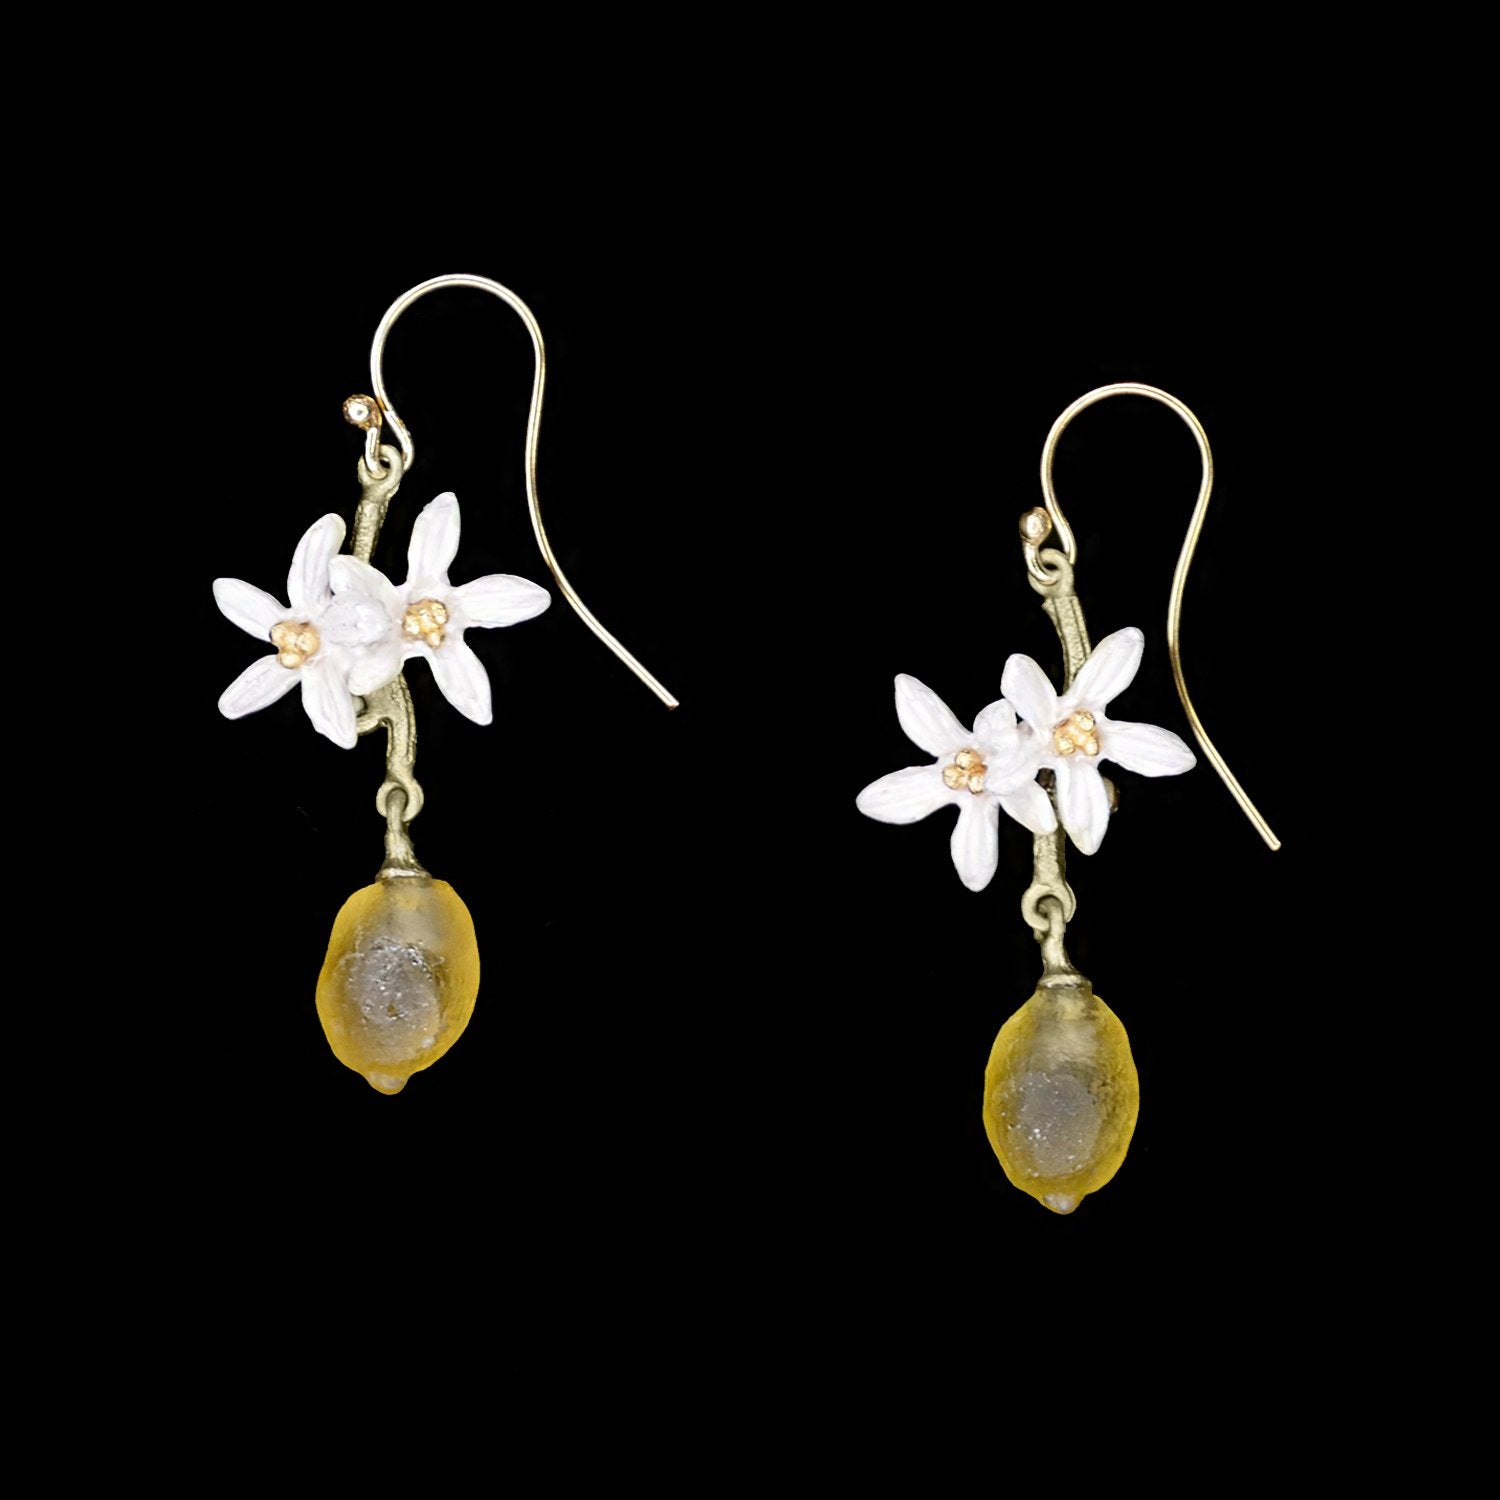 Lemon Drop Earrings - Flower Wire